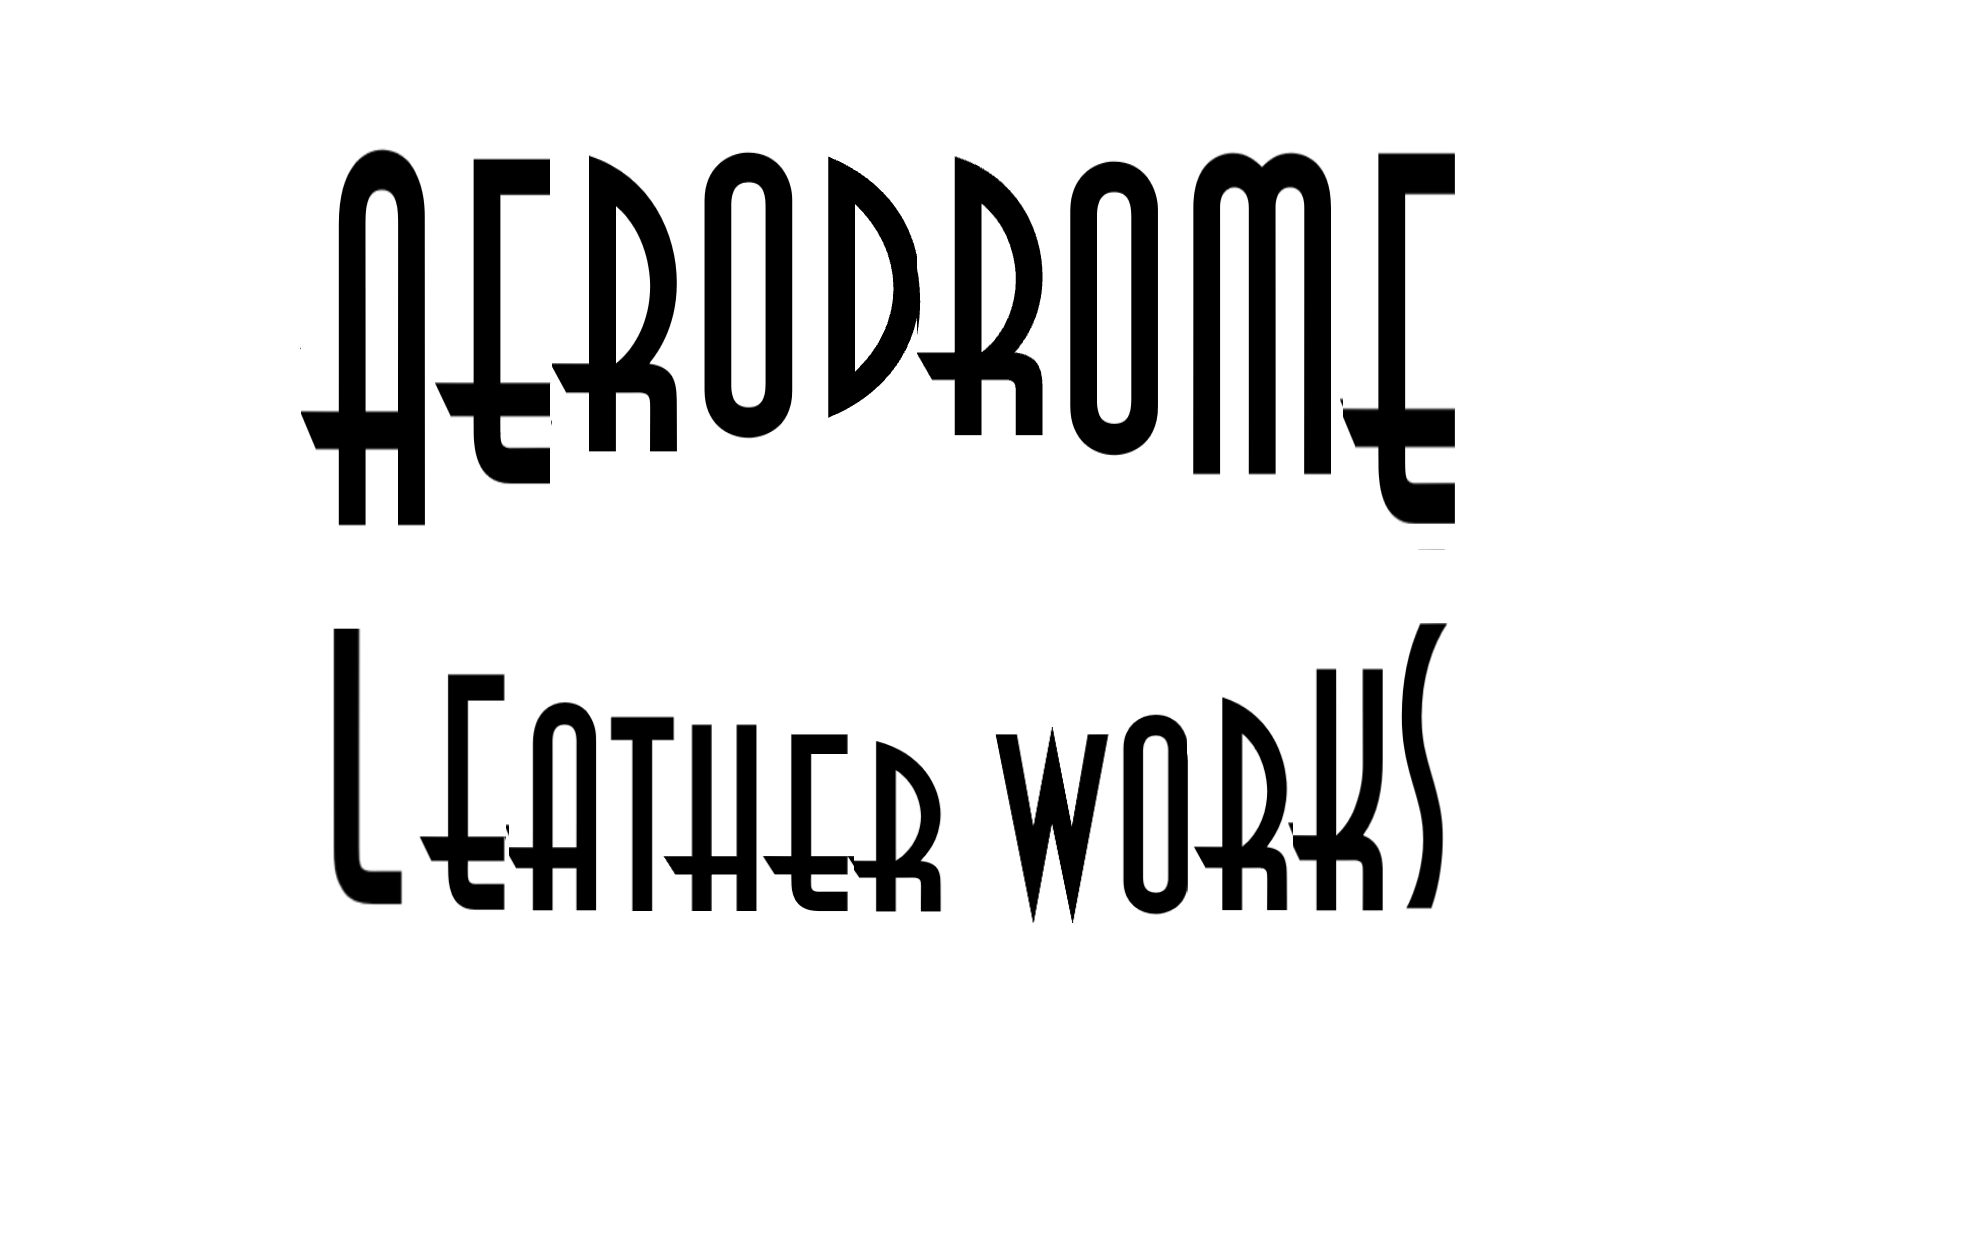 Aerodrome Leather Works